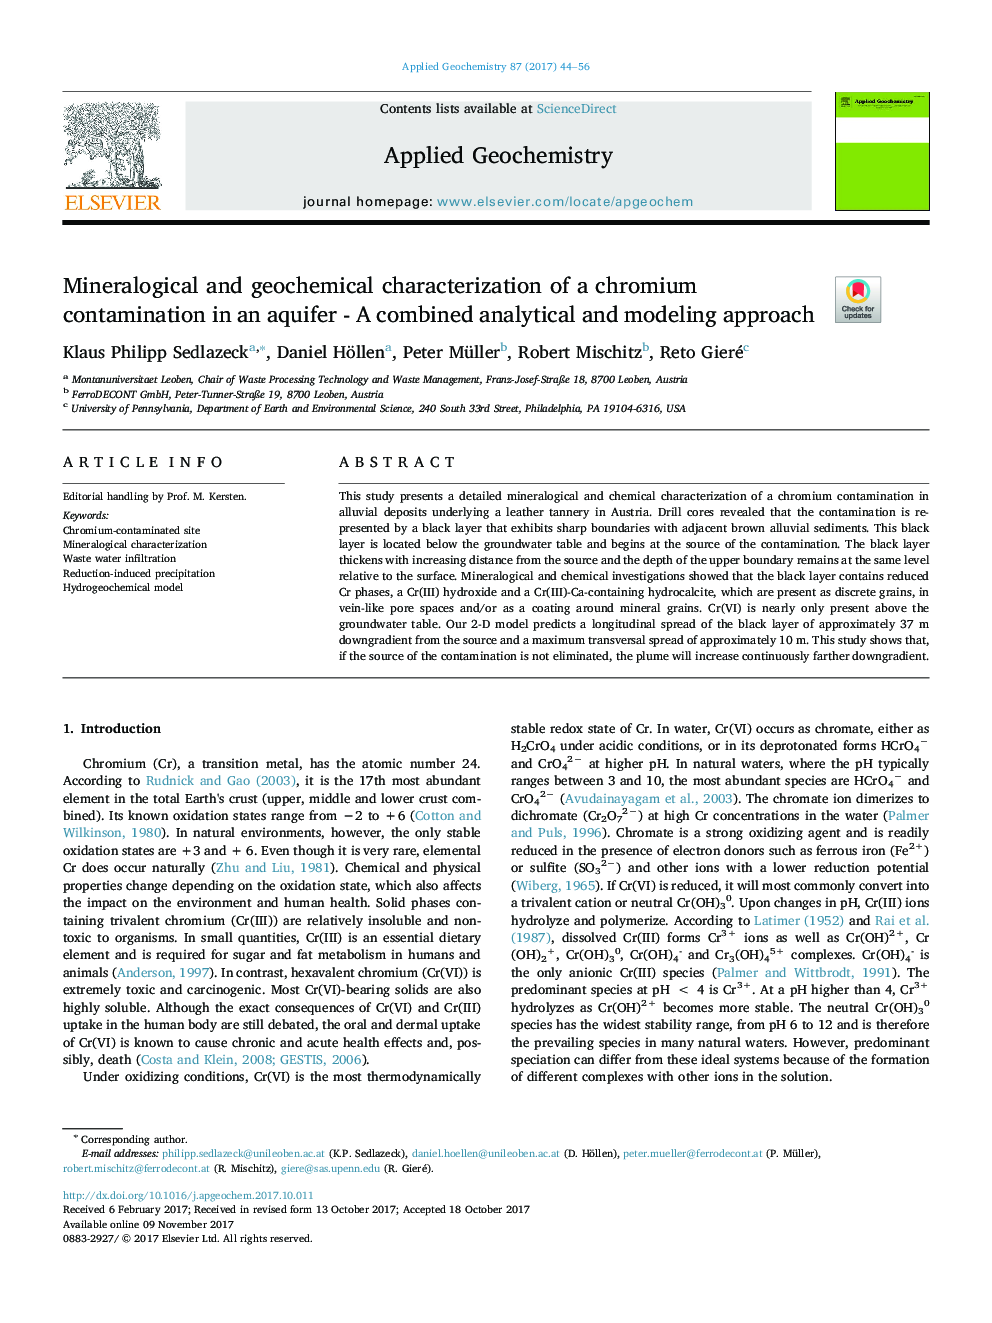 مشخصات کانه زیست شناسی و ژئوشیمیایی آلودگی کروم در یک آبخوان - رویکرد تحلیلی و مدل سازی ترکیبی 